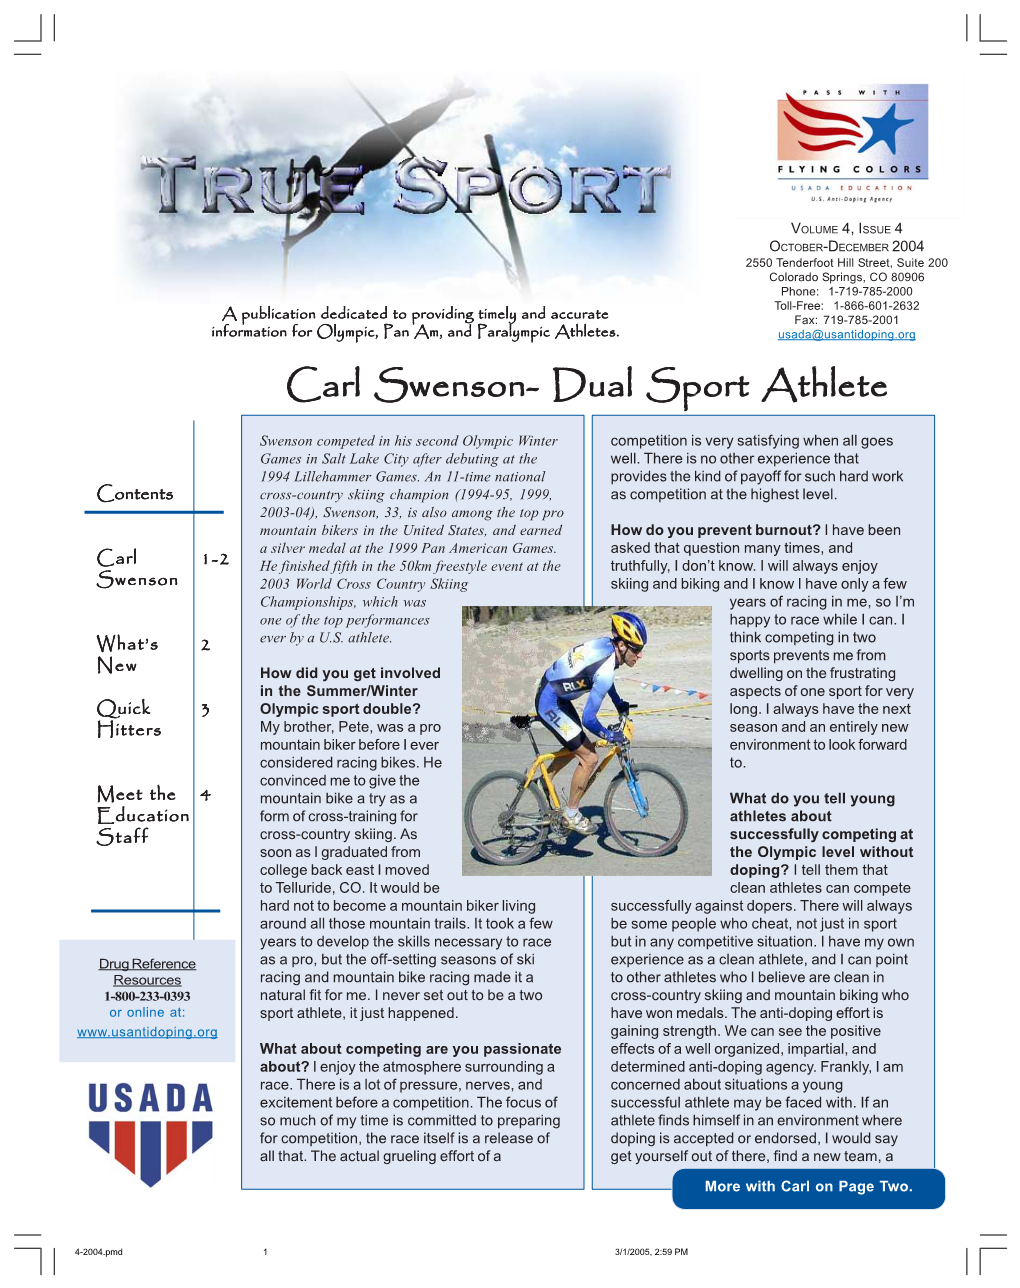 True Sport, October-December 2004